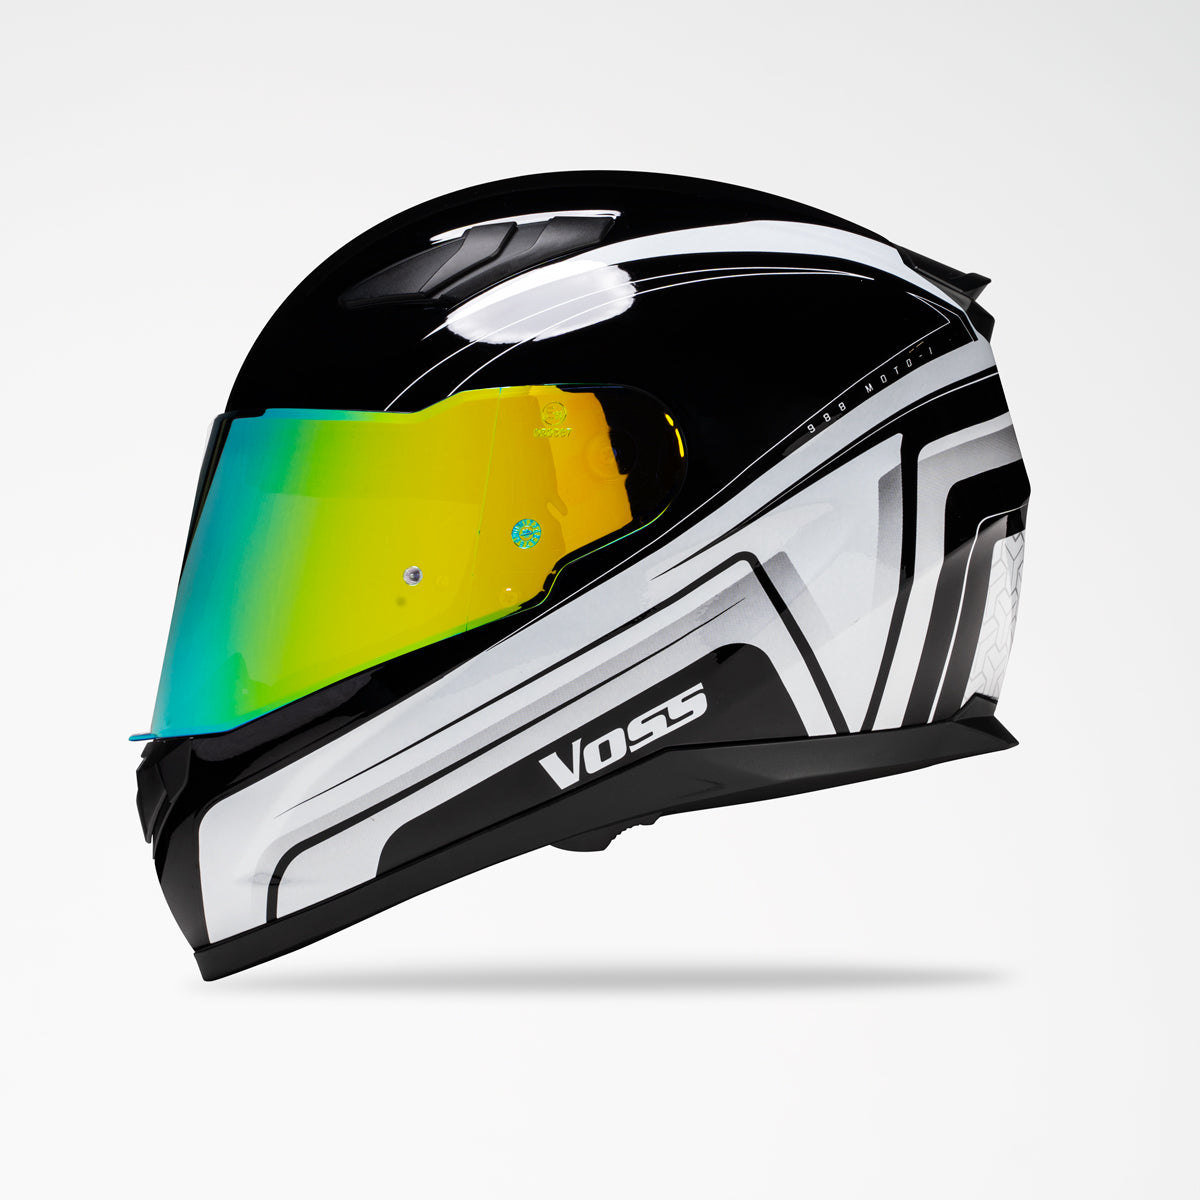 Voss 988 Face Katana Helmet in Glossy White/